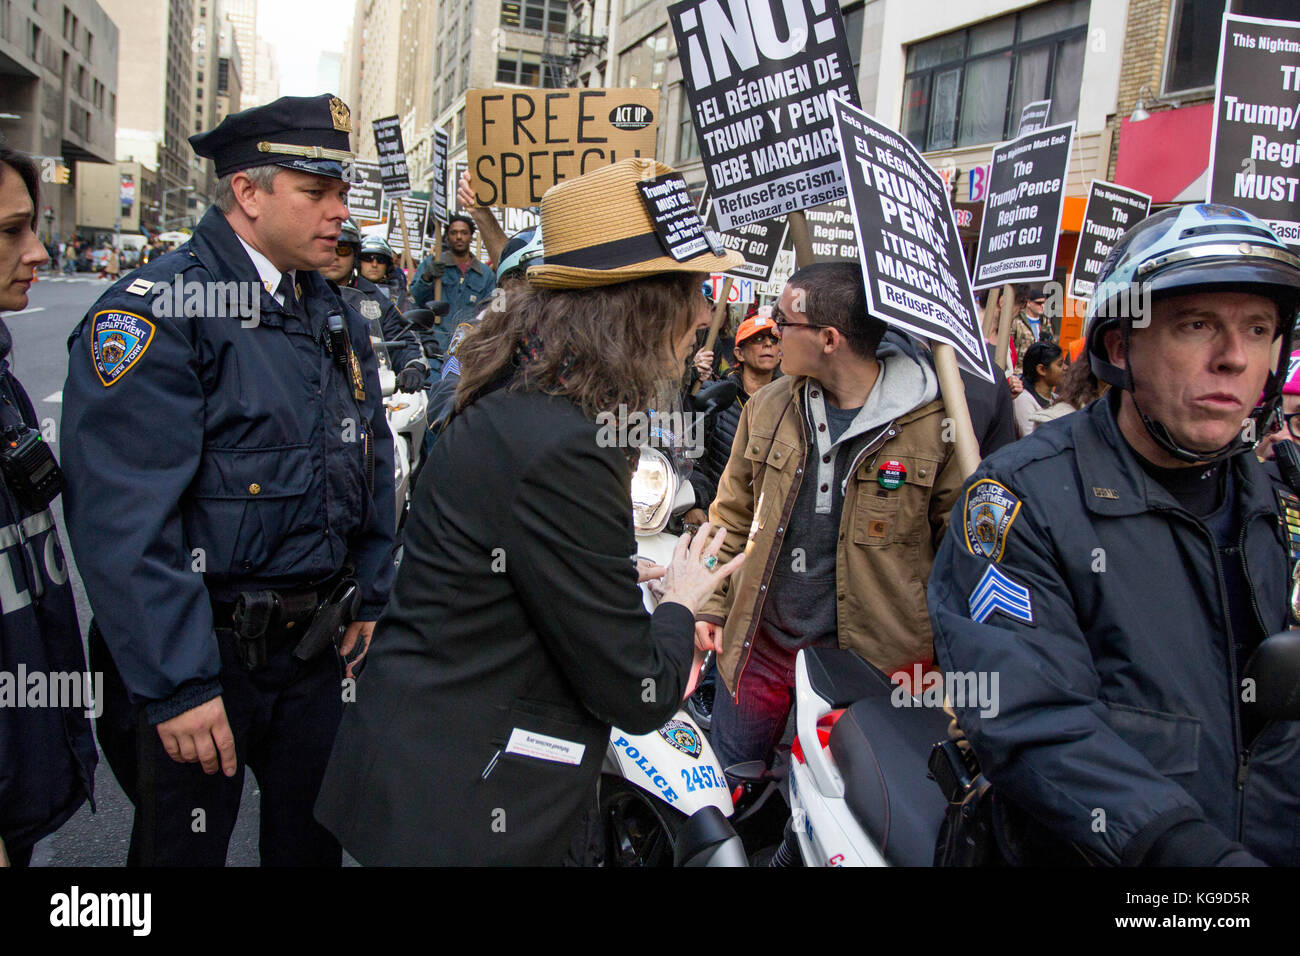 Demonstranten mit nypd während einer verweigern Faschismus März in Times Square, New York City, Samstag, November 4th, 2017. Sich weigern, den Faschismus zu h beabsichtigt Stockfoto